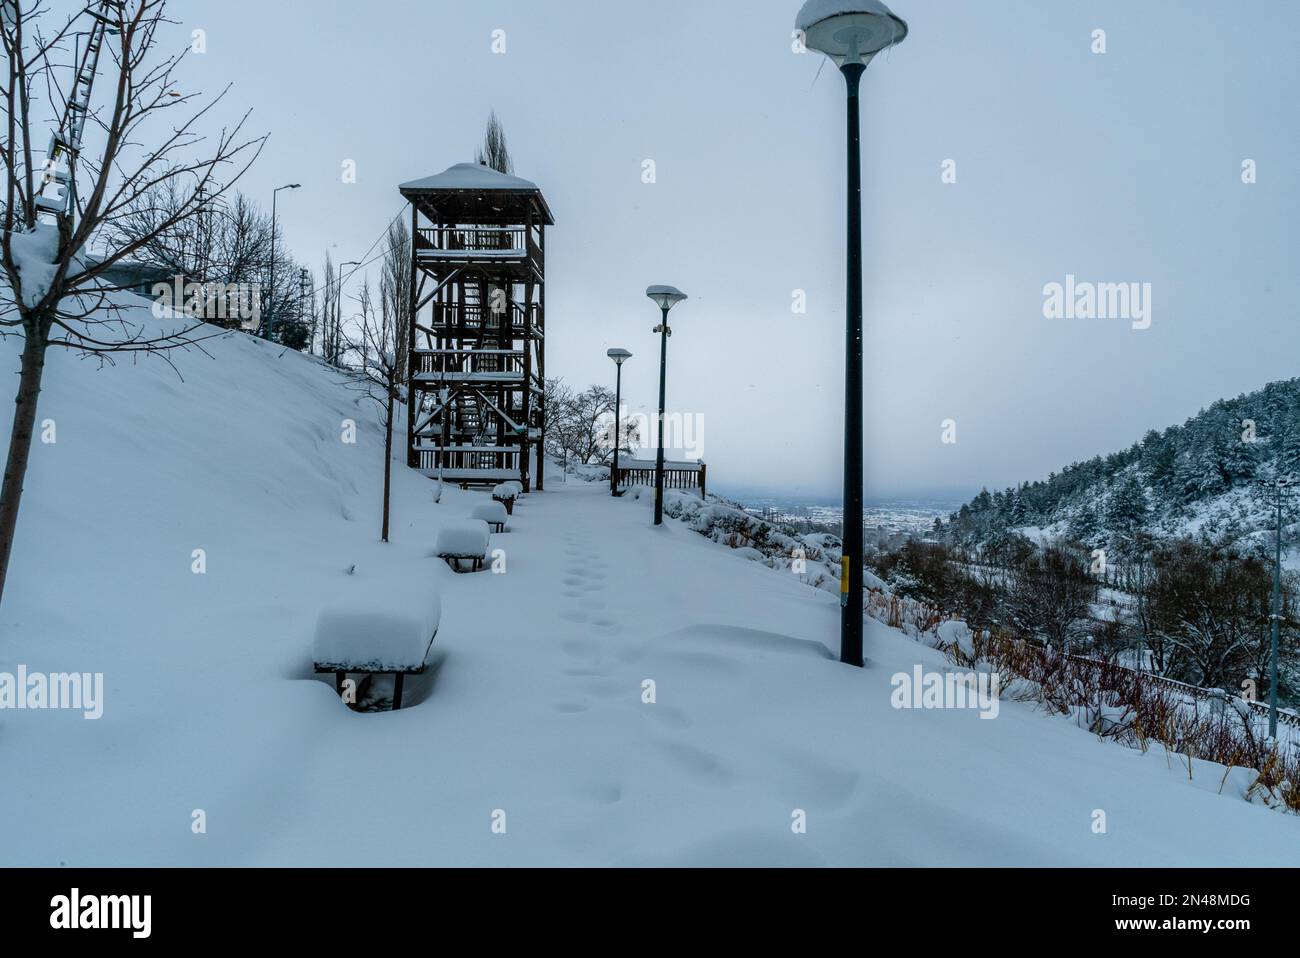 Wooden Observatory Schneefall im Winter Schneefall im Hintergrund. Verschneiter, kalter Tag, Frostwettersaison. Foto der Konzeptidee. Hohe Full hd-Fotoqualität. Stockfoto